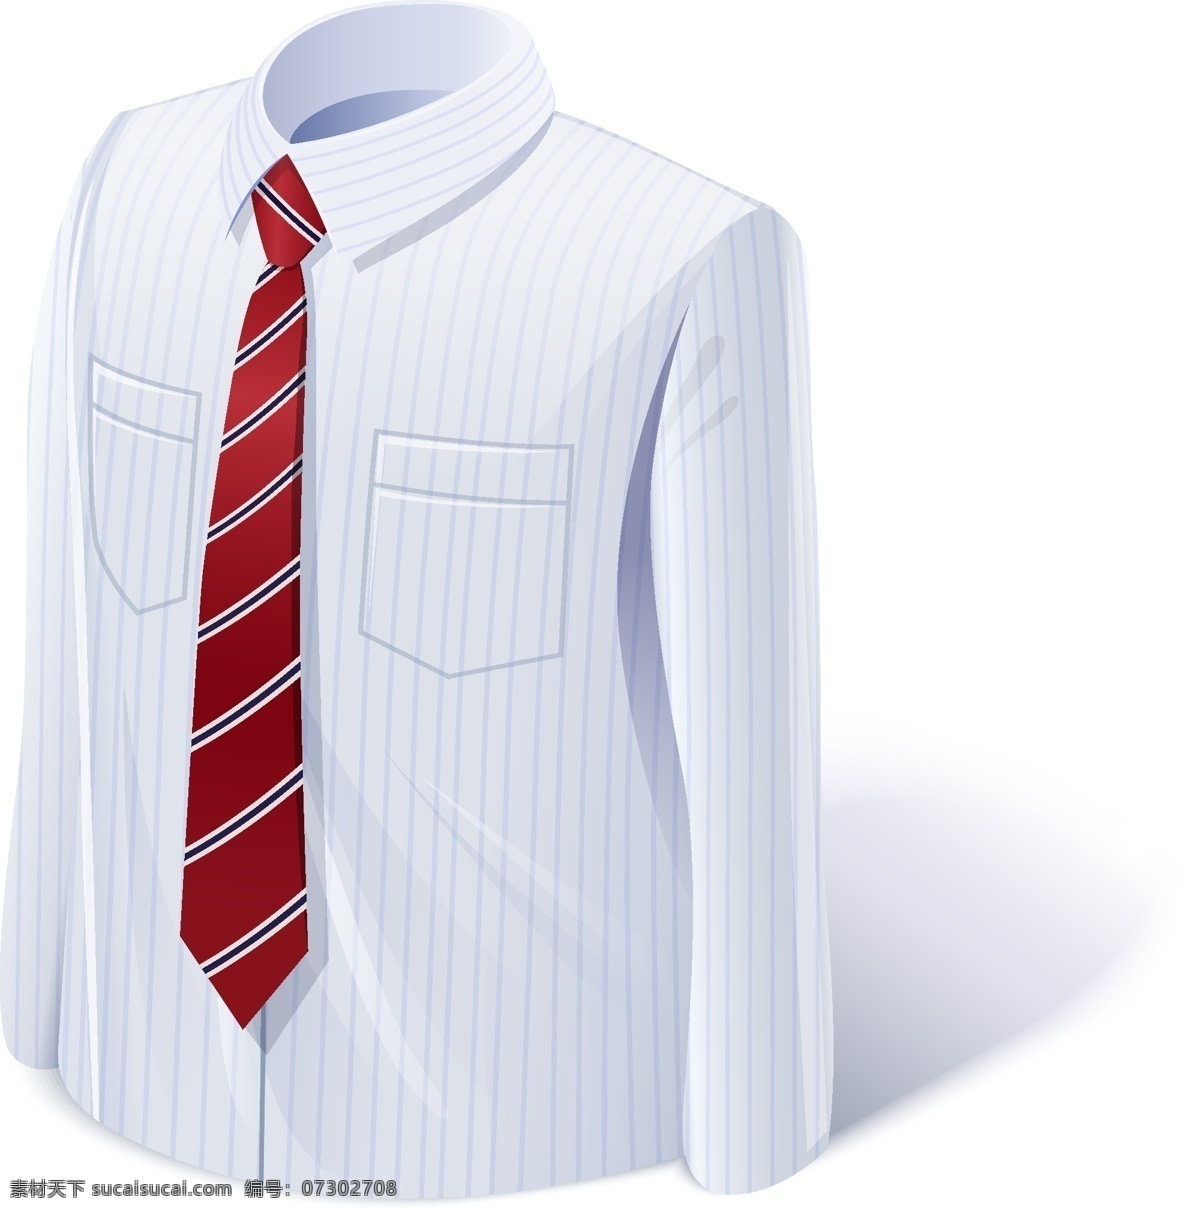 领带 衬衣 矢量 模板下载 衬衫 矢量领带 领带插图 卡通领带 领带图标 珠宝服饰 生活百科 矢量素材 白色